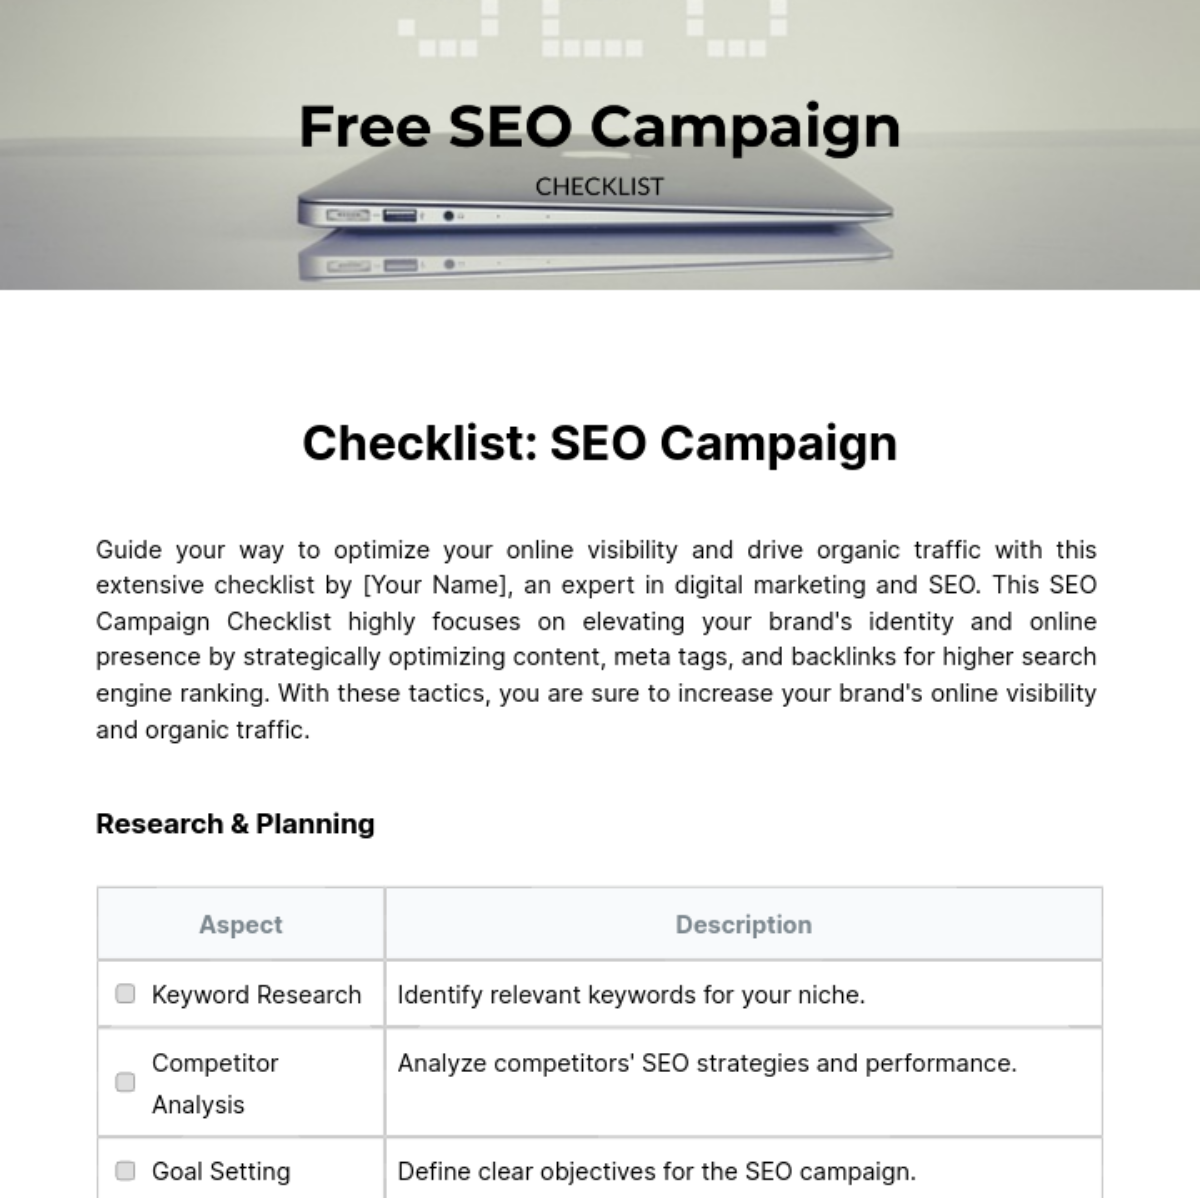 Free SEO Campaign Checklist Template